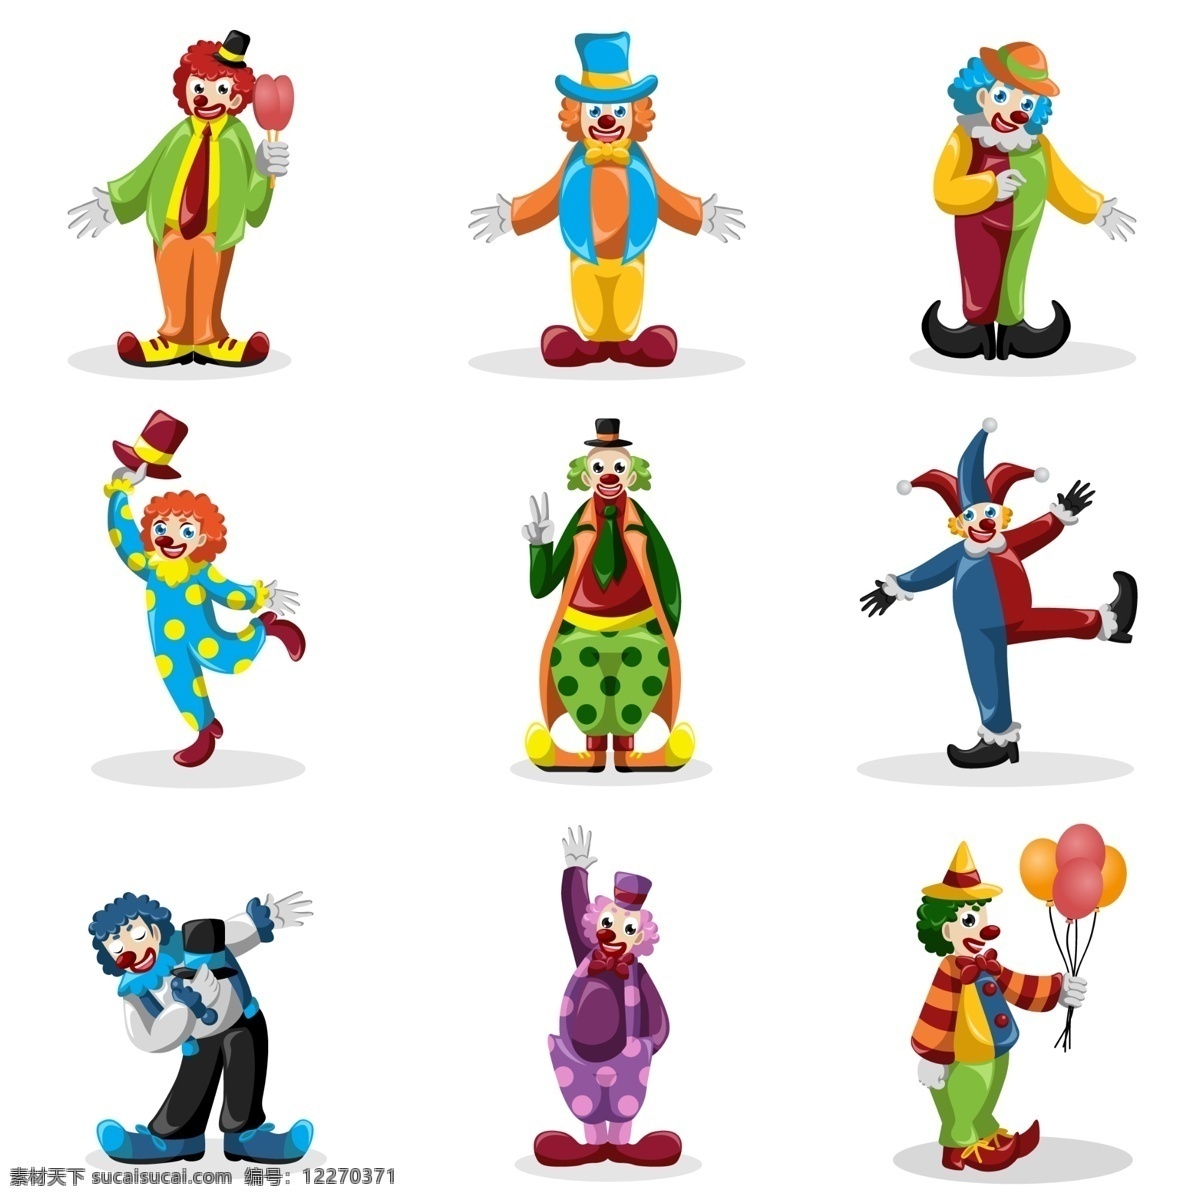 小丑 小丑集合 小丑素材 各类小丑 各种小丑 马戏团小丑 马戏团素材 愚人节素材 分层